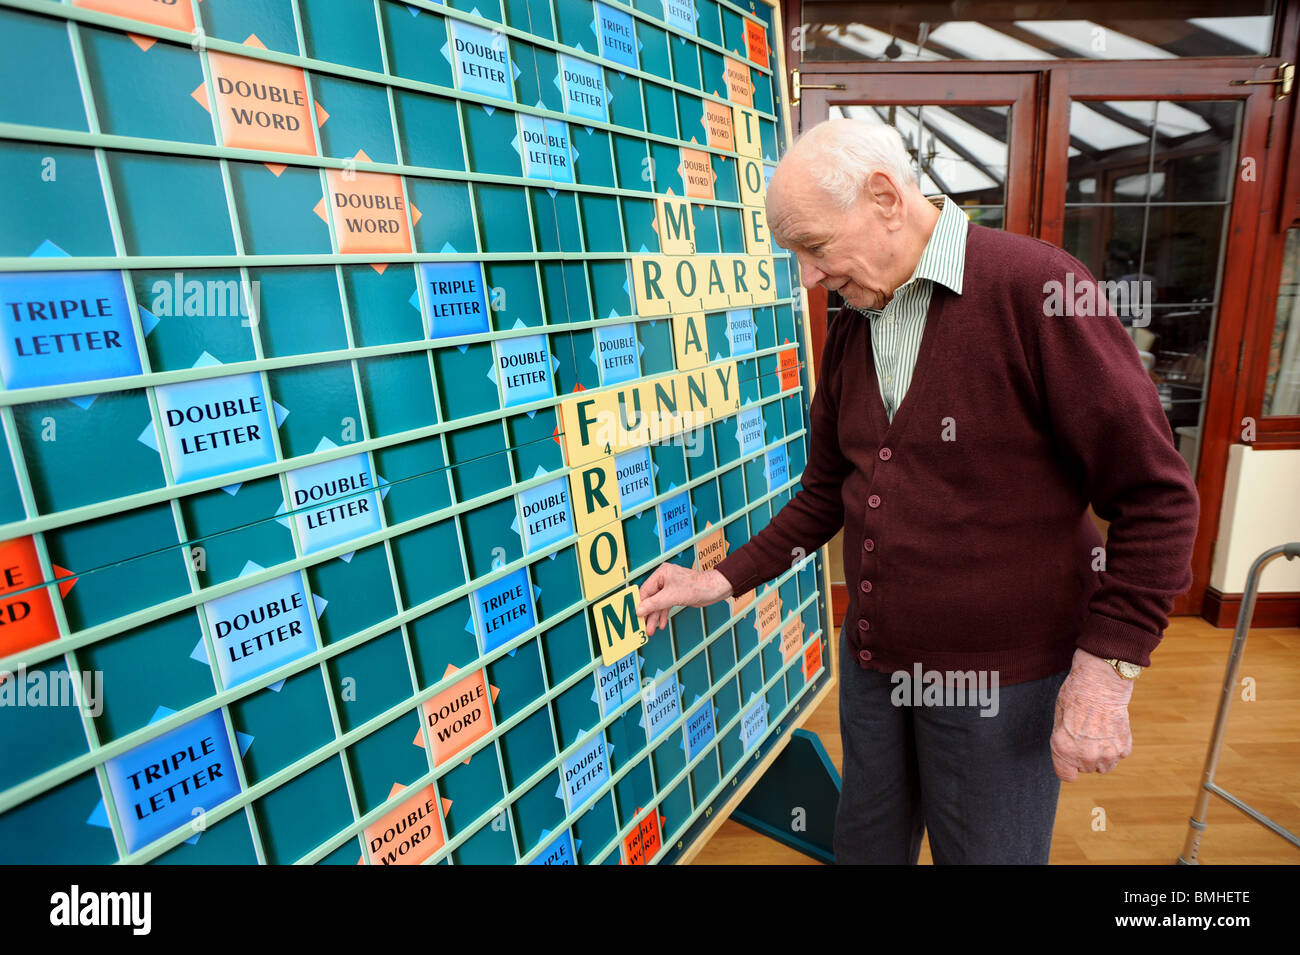 Un vieil homme jouant avec un scrabble géant bord de l'un des nombreuses activités proposées dans les foyers de soins pour garder l'esprit des gens actif Banque D'Images